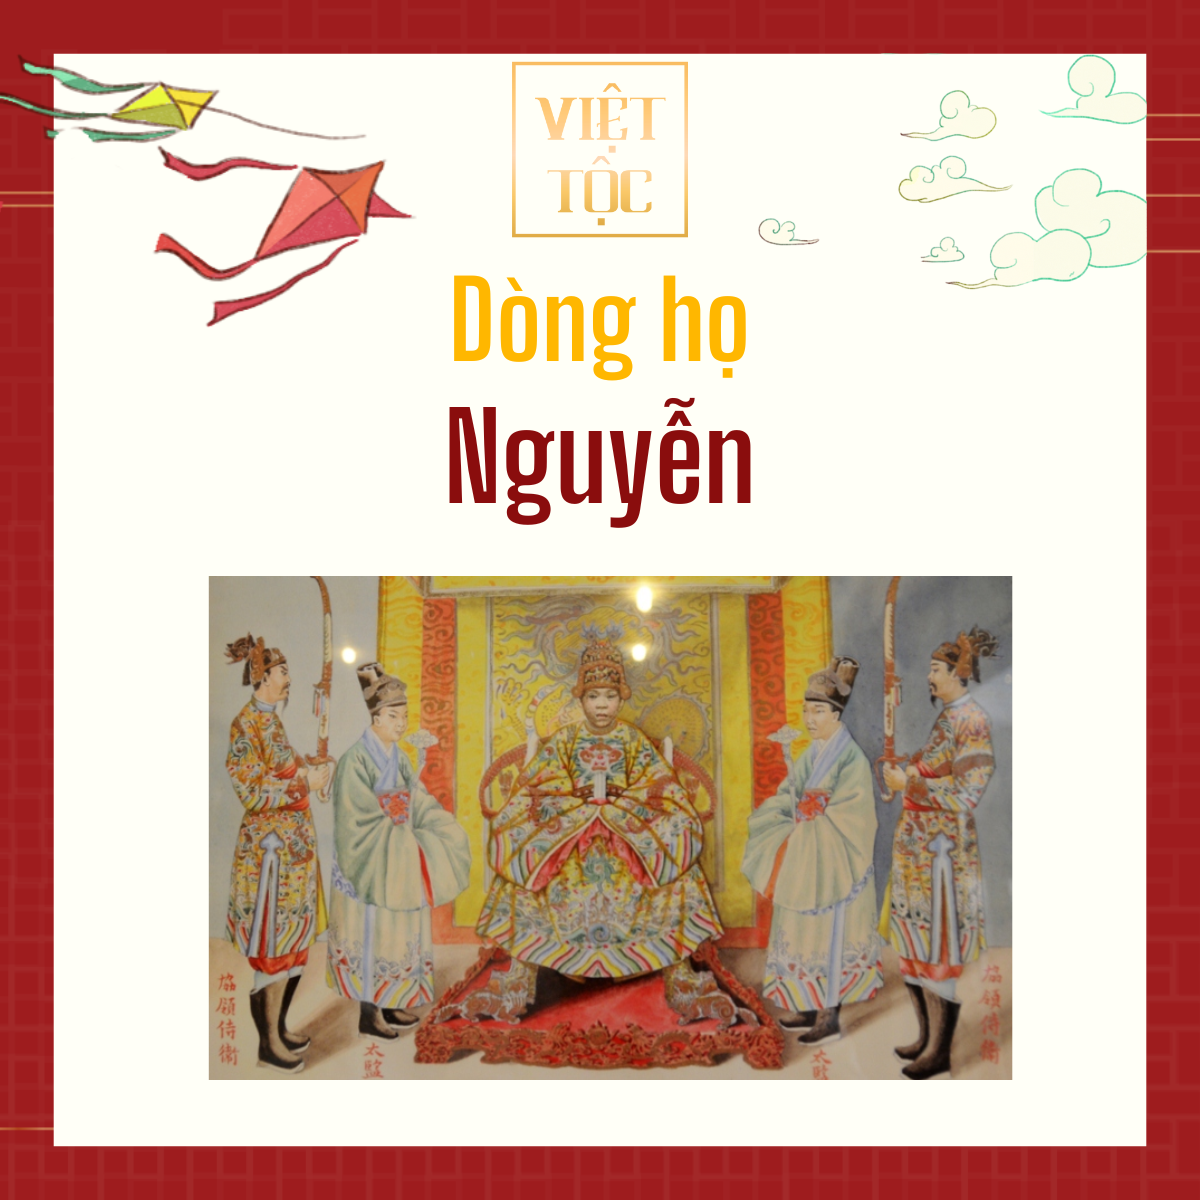 Dòng họ Nguyễn là dòng họ lớn nhất Việt Nam